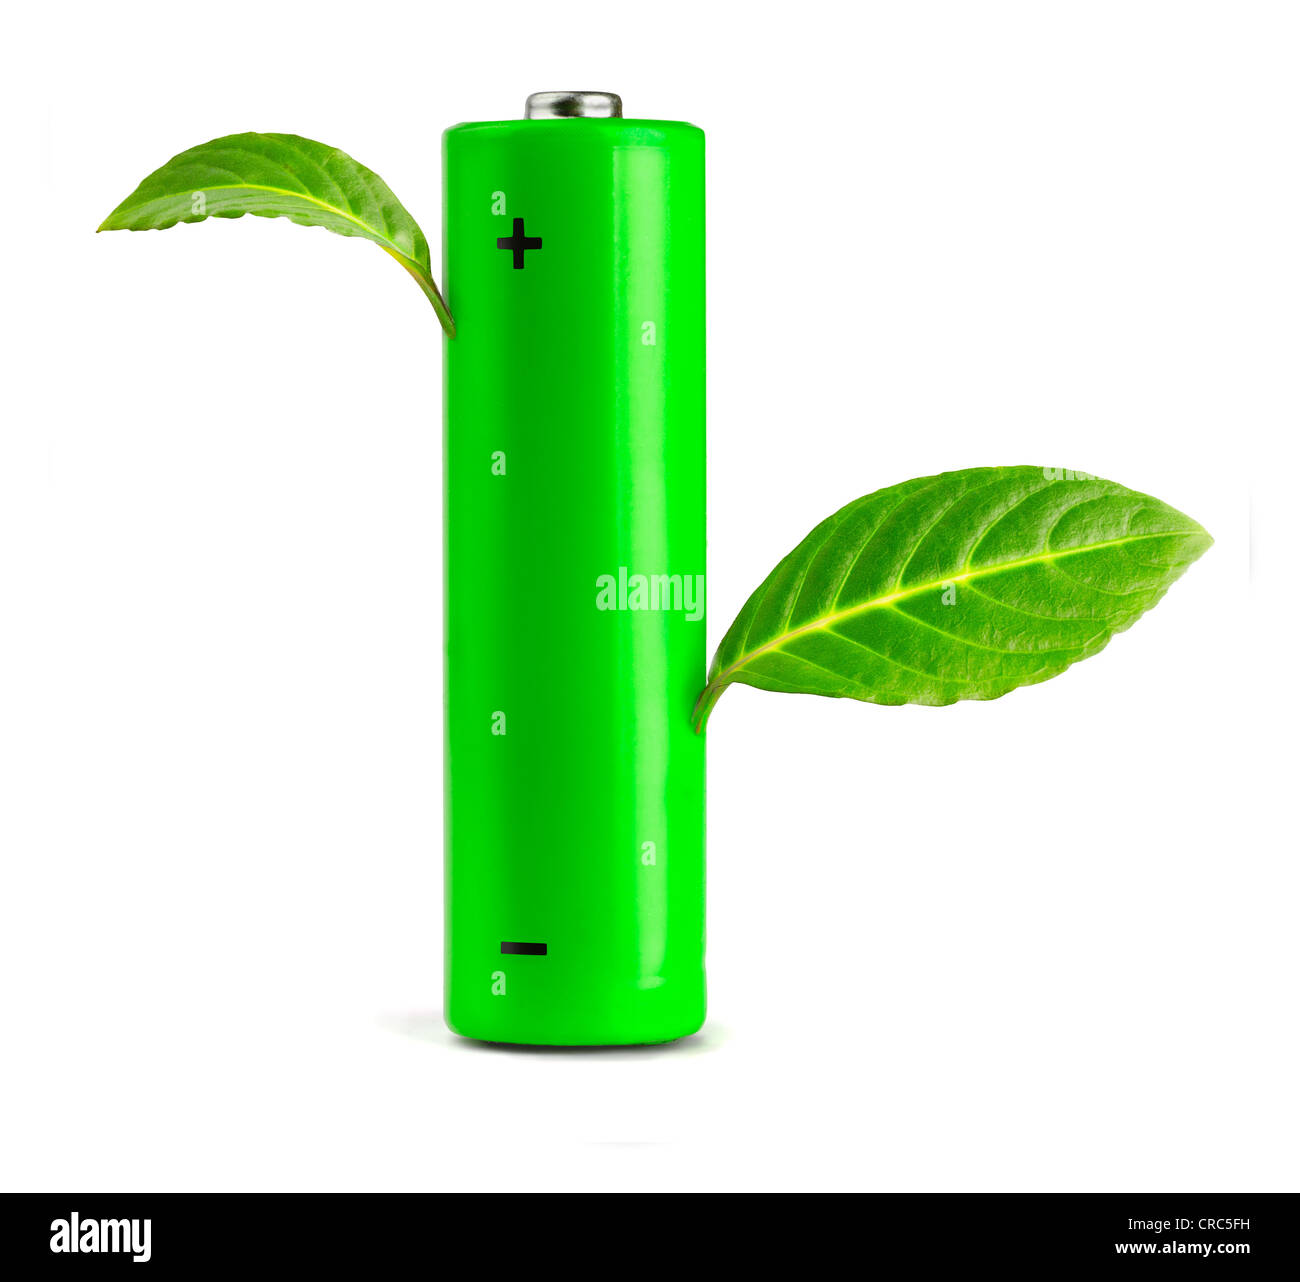 Les feuilles vertes de plus en plus la batterie. Eco concept Banque D'Images